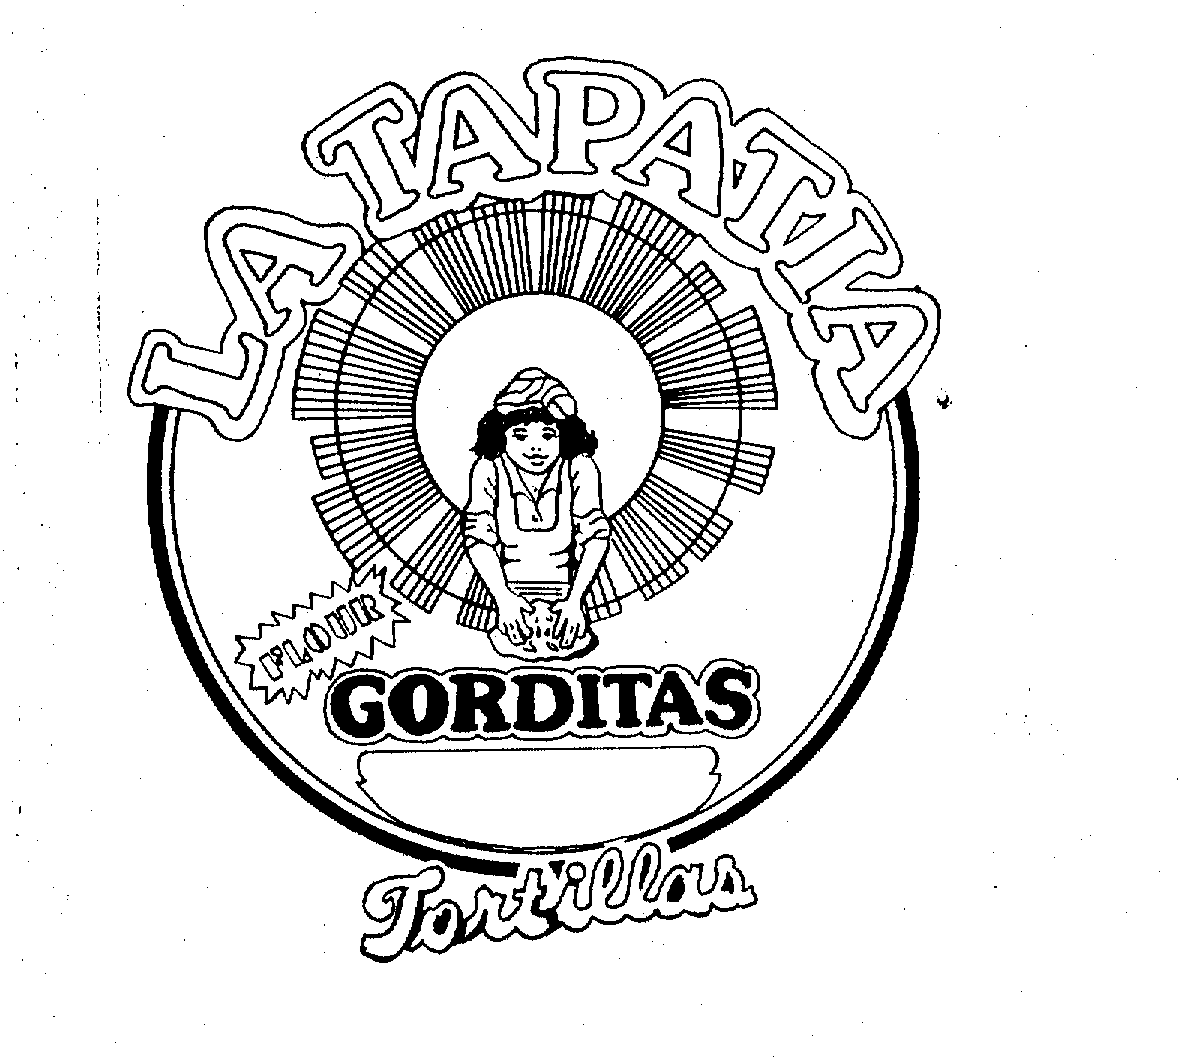  LA TAPATIA TORTILLAS GORDITAS FLOUR